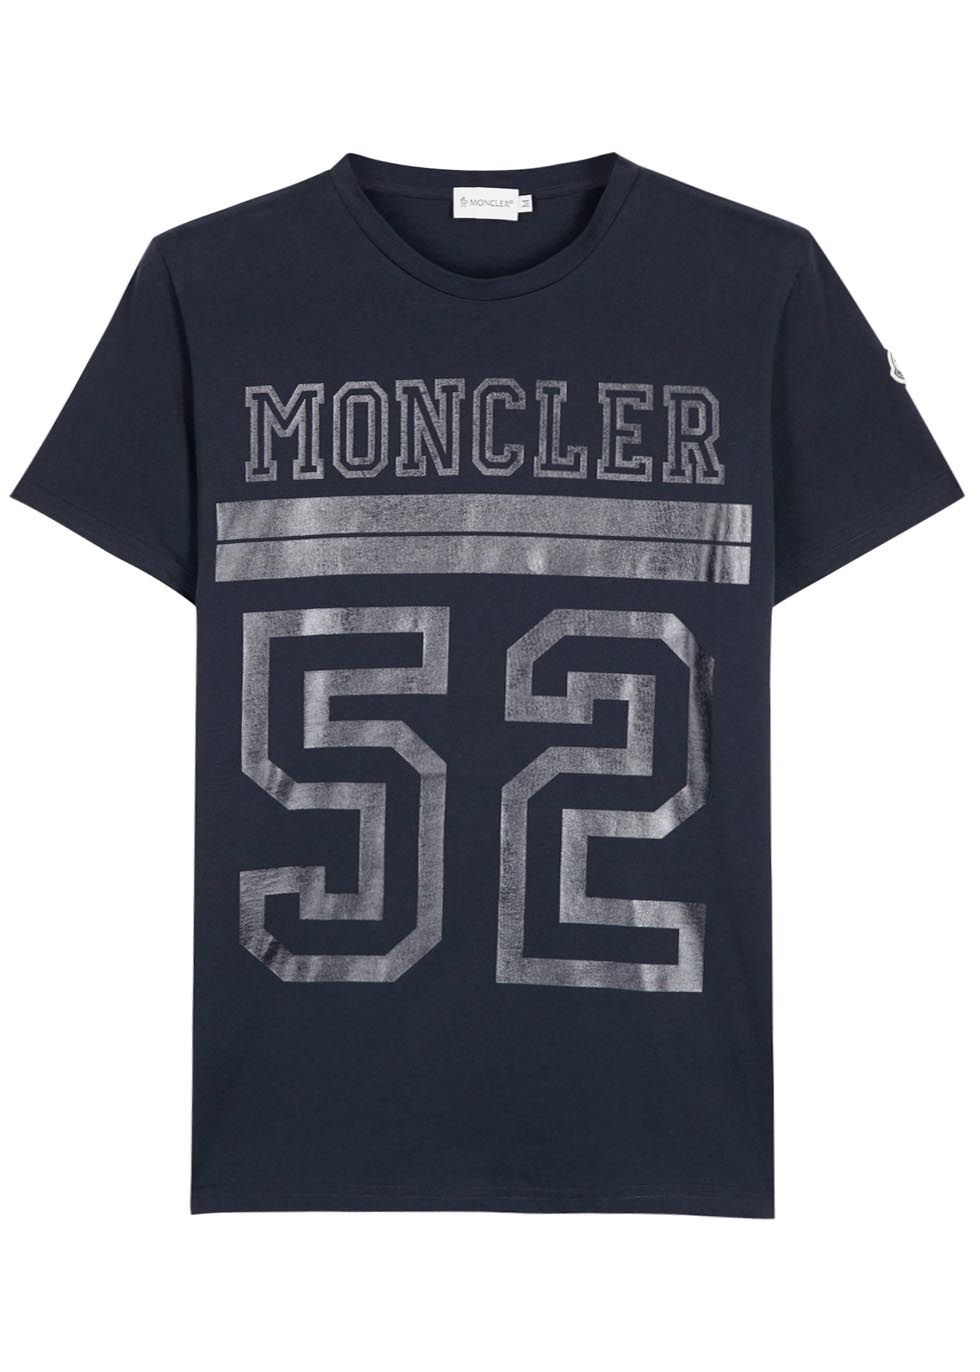 Moncler 52 T Shirt on Sale, 56% OFF | www.asdonline.co.uk